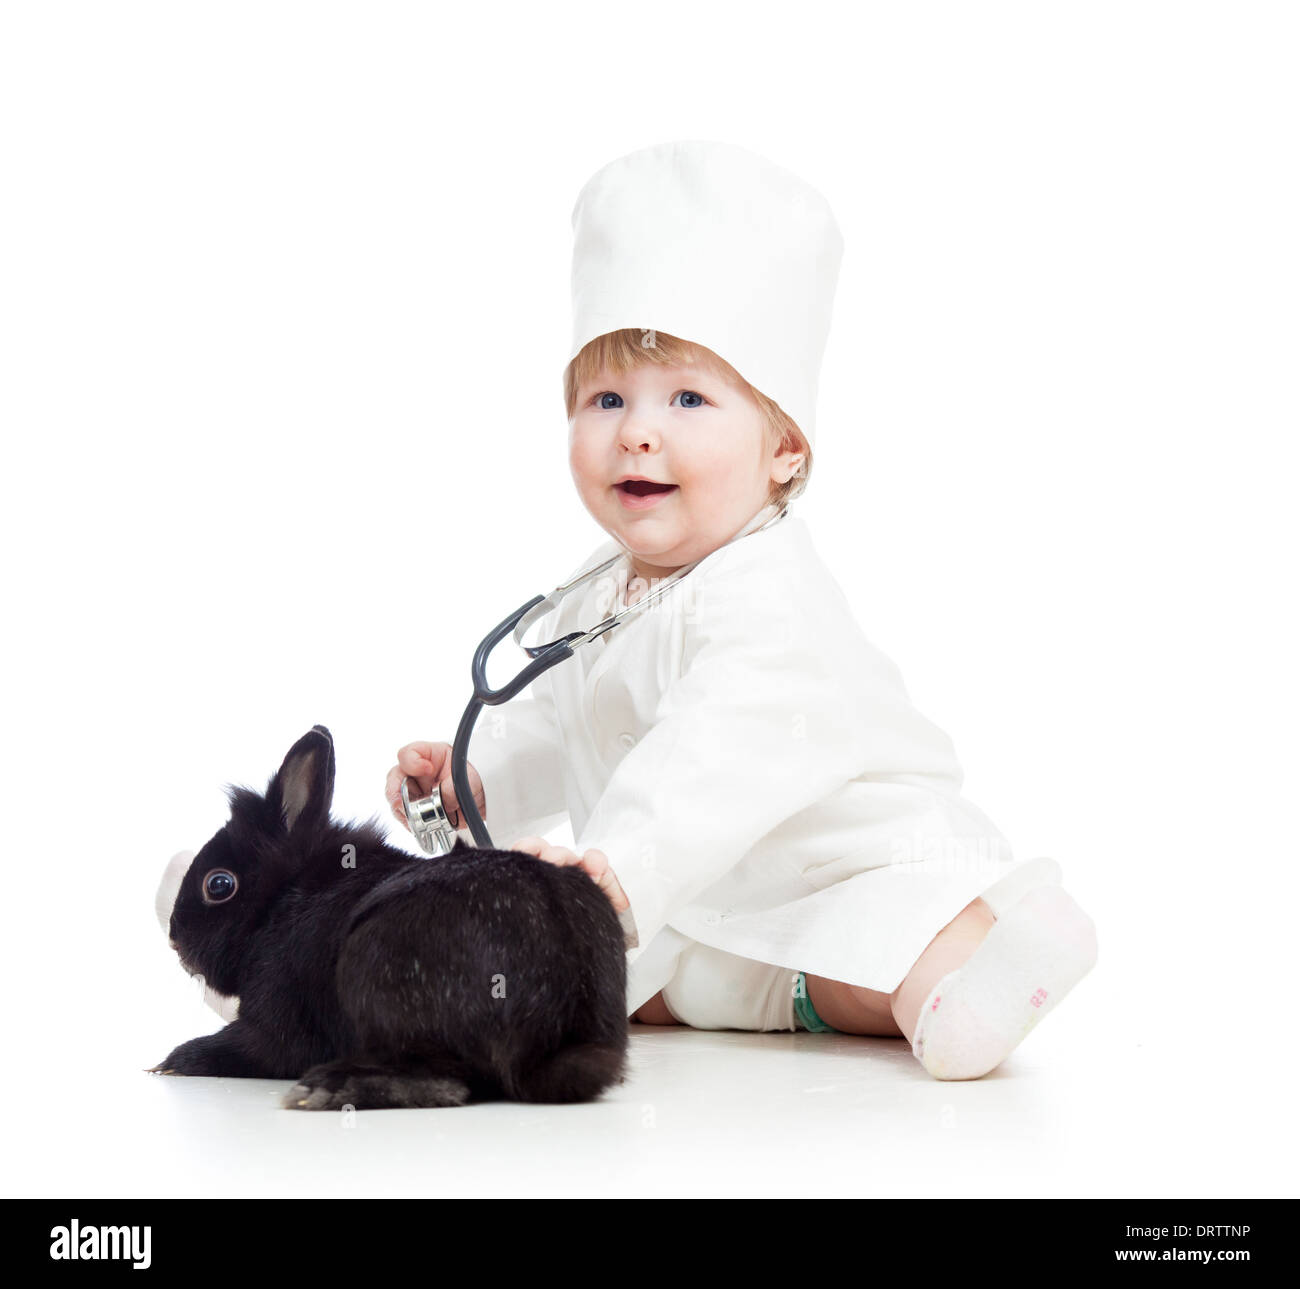 Il capretto con vestiti di dottore giocando con il coniglietto Foto Stock